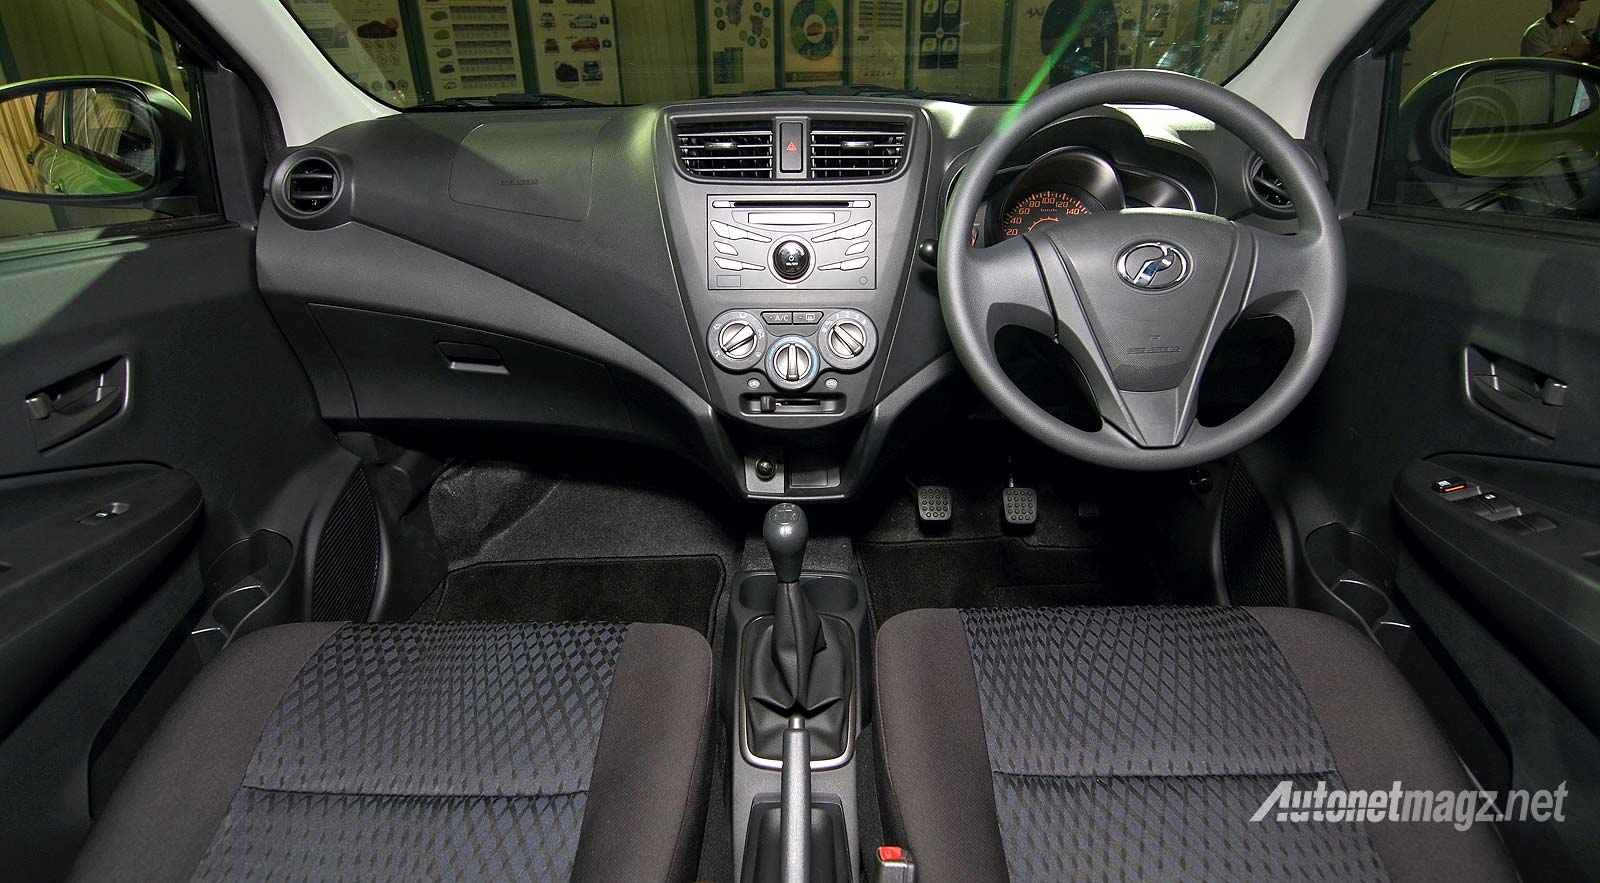 Gambar Modifikasi Interior Mobil Agya Modif Mobil